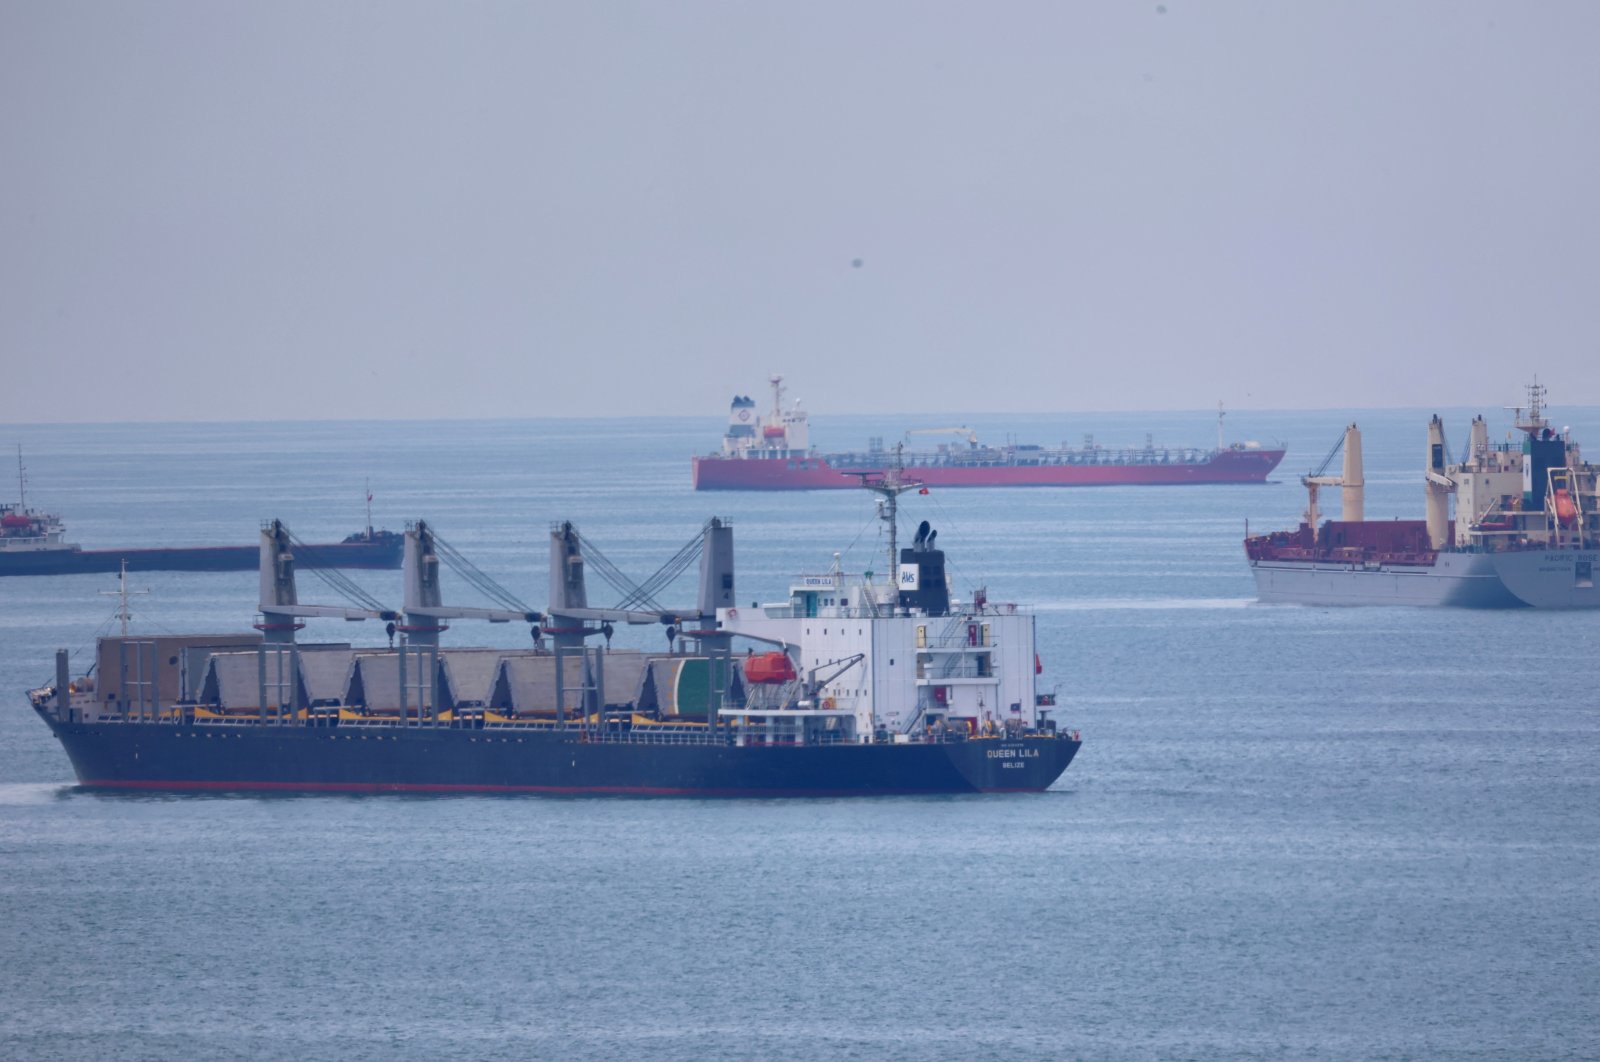 Nasib kesepakatan biji-bijian bergantung pada Rusia saat kapal terakhir meninggalkan Ukraina